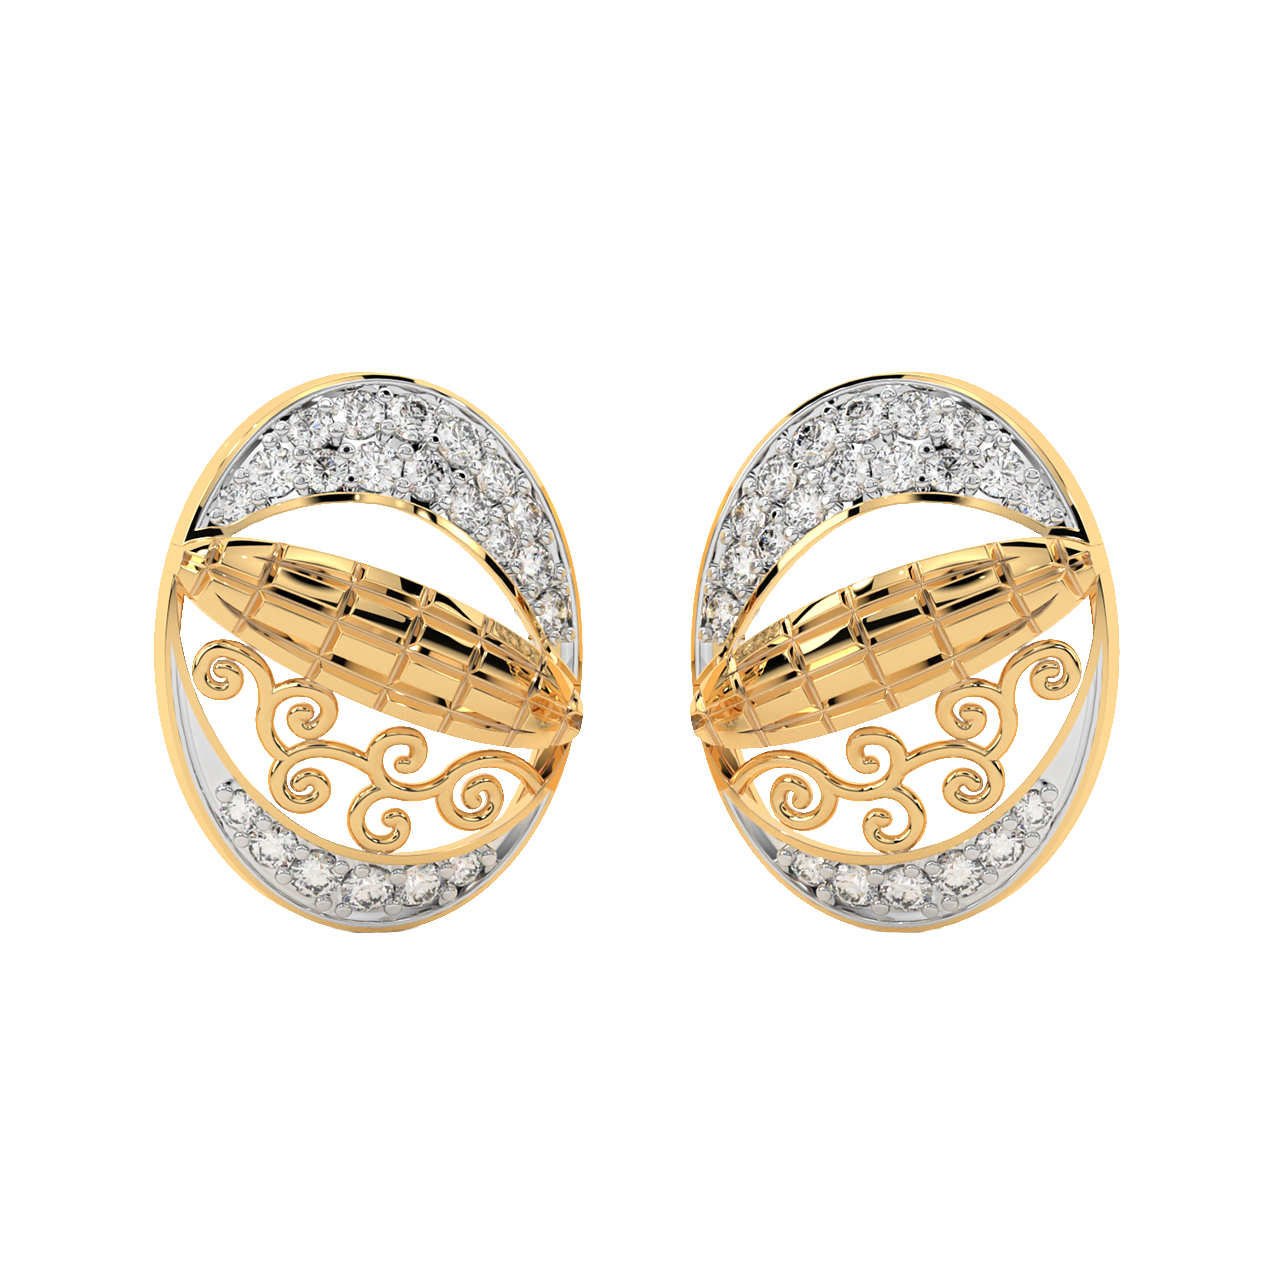 Waama Jewels Agate Earring / Stud Earring / Tops Earring / Daily Wear  Earring / 99 Rs. Earring / Under 100 Rs. E… | Girls earrings, Fashion  earrings, Agate earrings